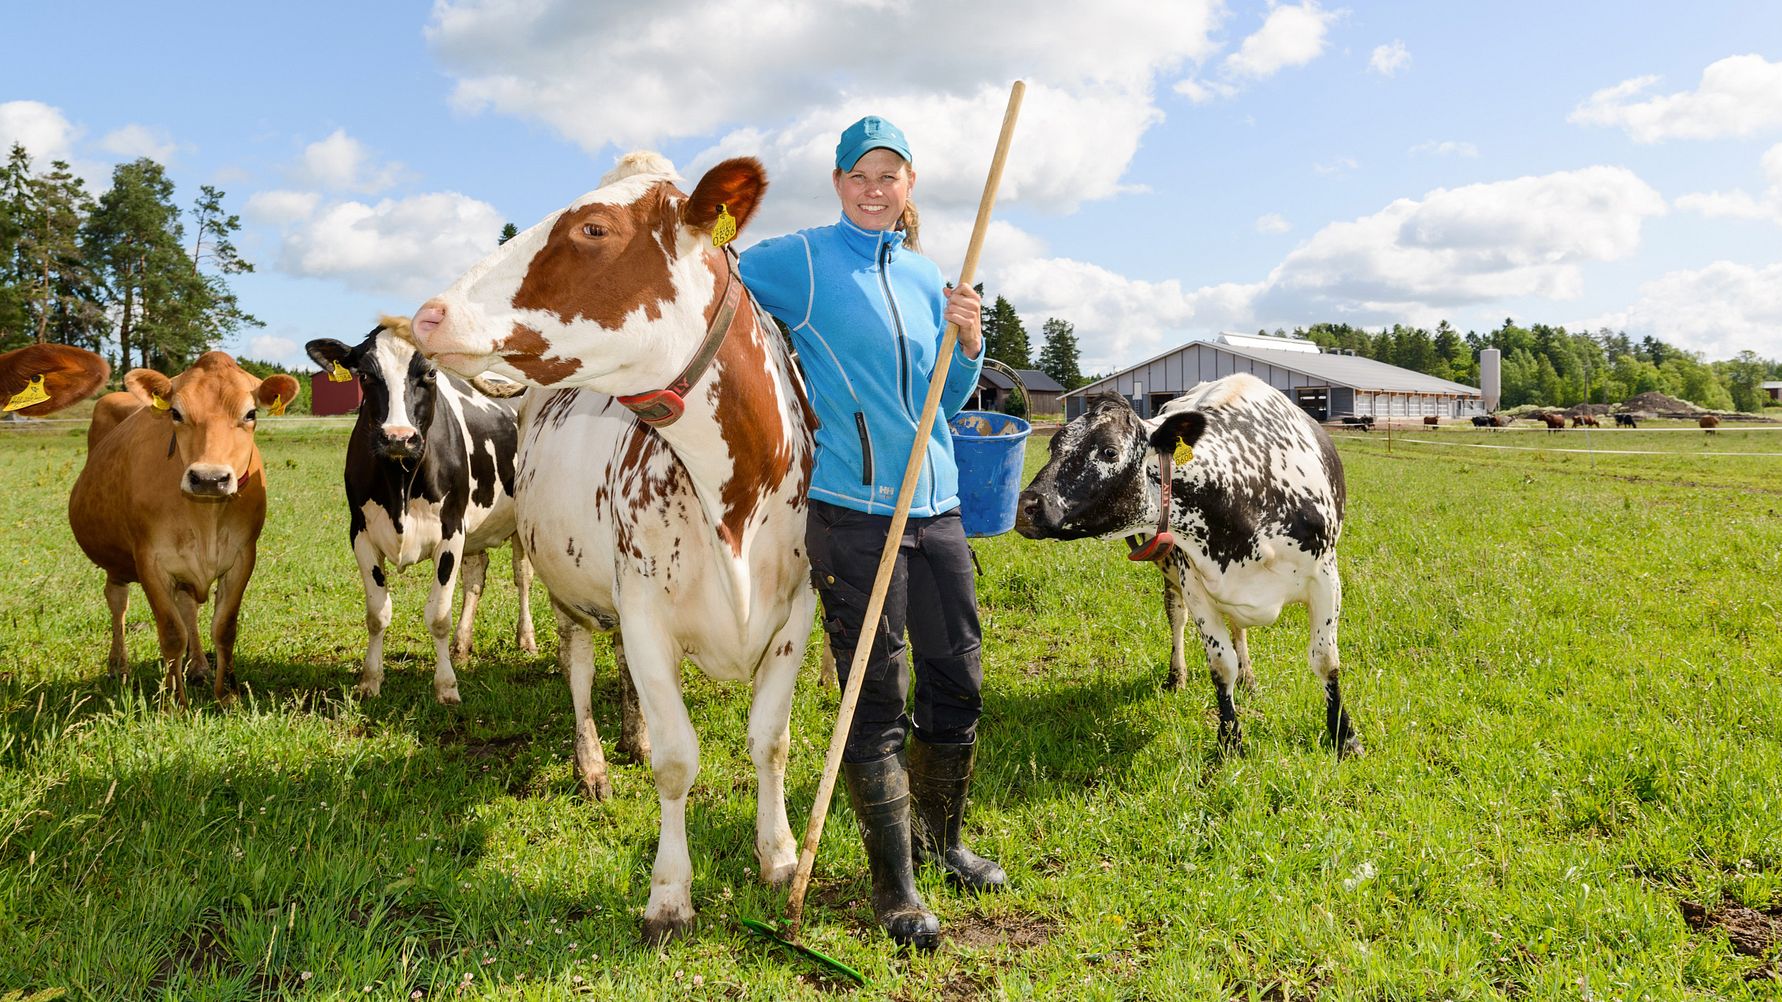 Uudellamaalla tuotetun Arlan uuden Lähitilan maidon lehmät laiduntavat kesällä ja ulkoilevat talvella